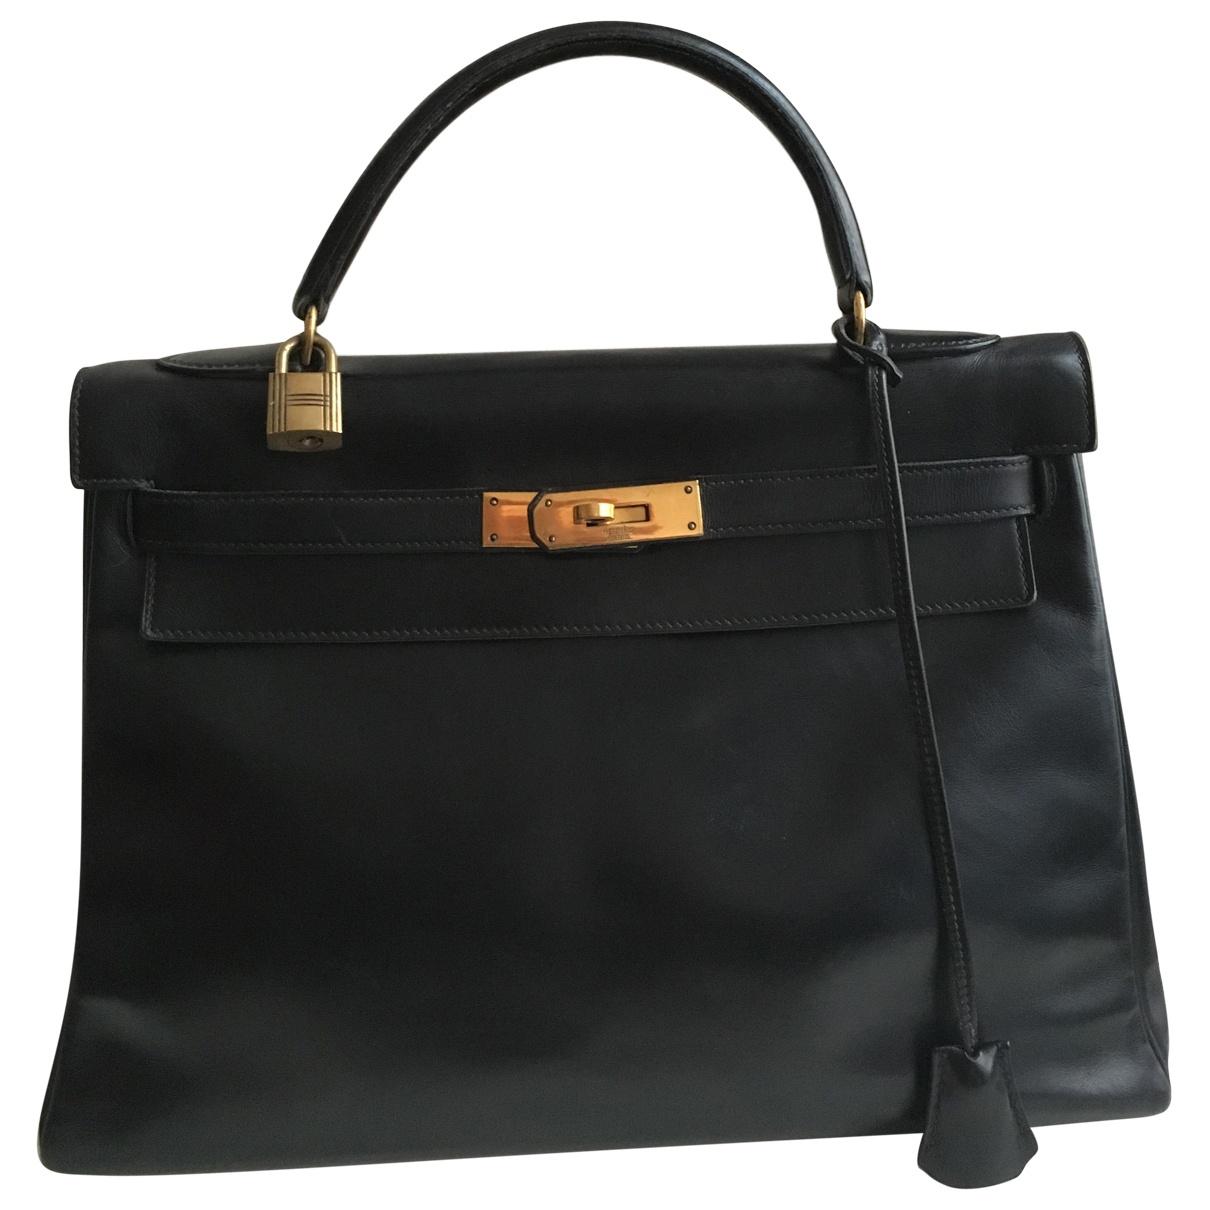 Hermès Pre-owned Kelly 32 Leather Handbag in Black - Lyst